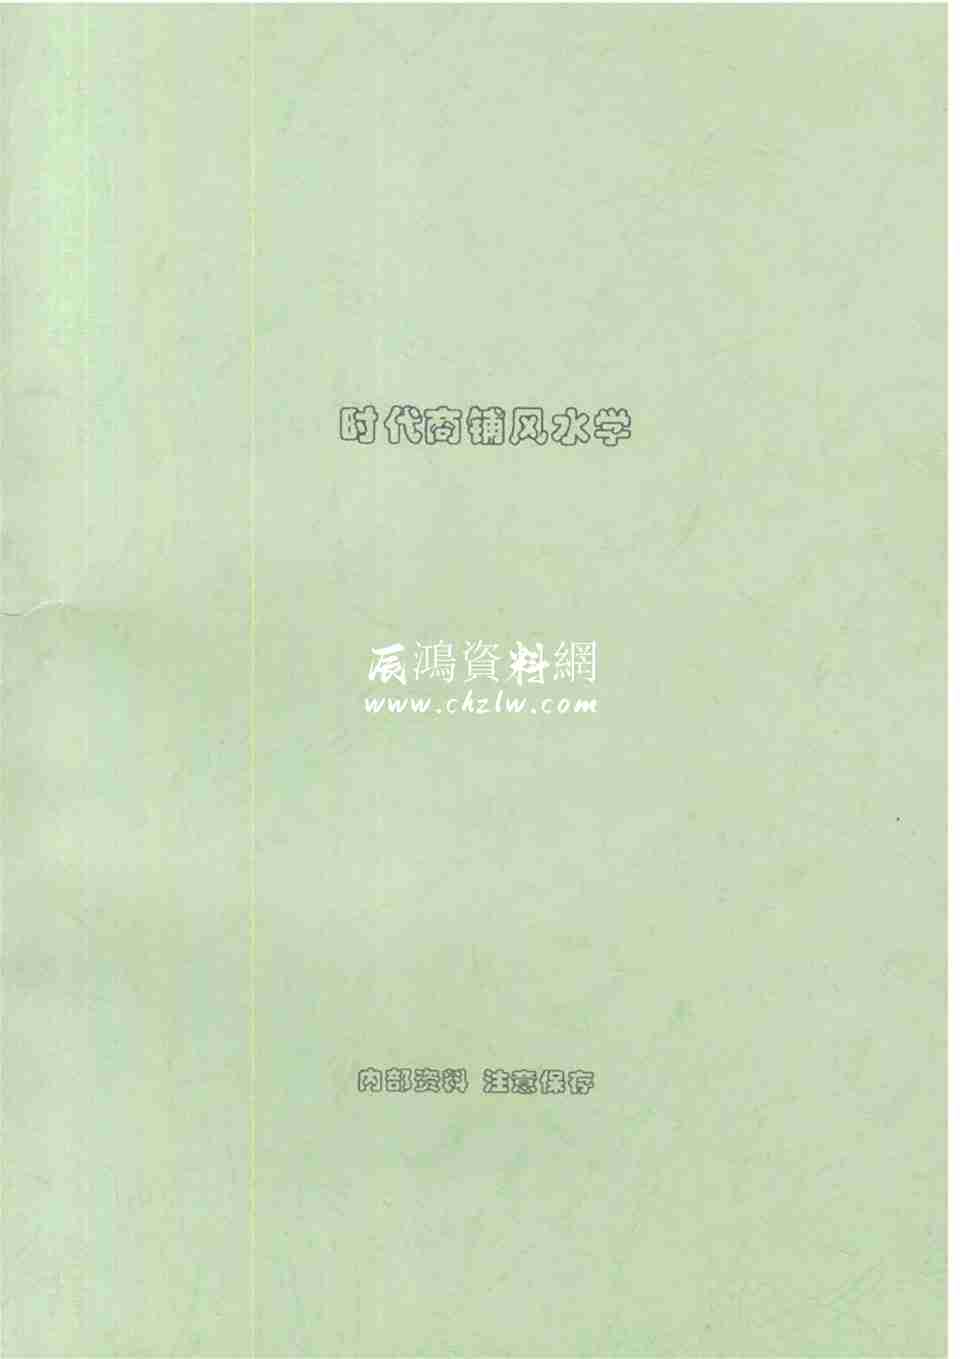 劉樸生 《時代商鋪風水學》100頁.pdf